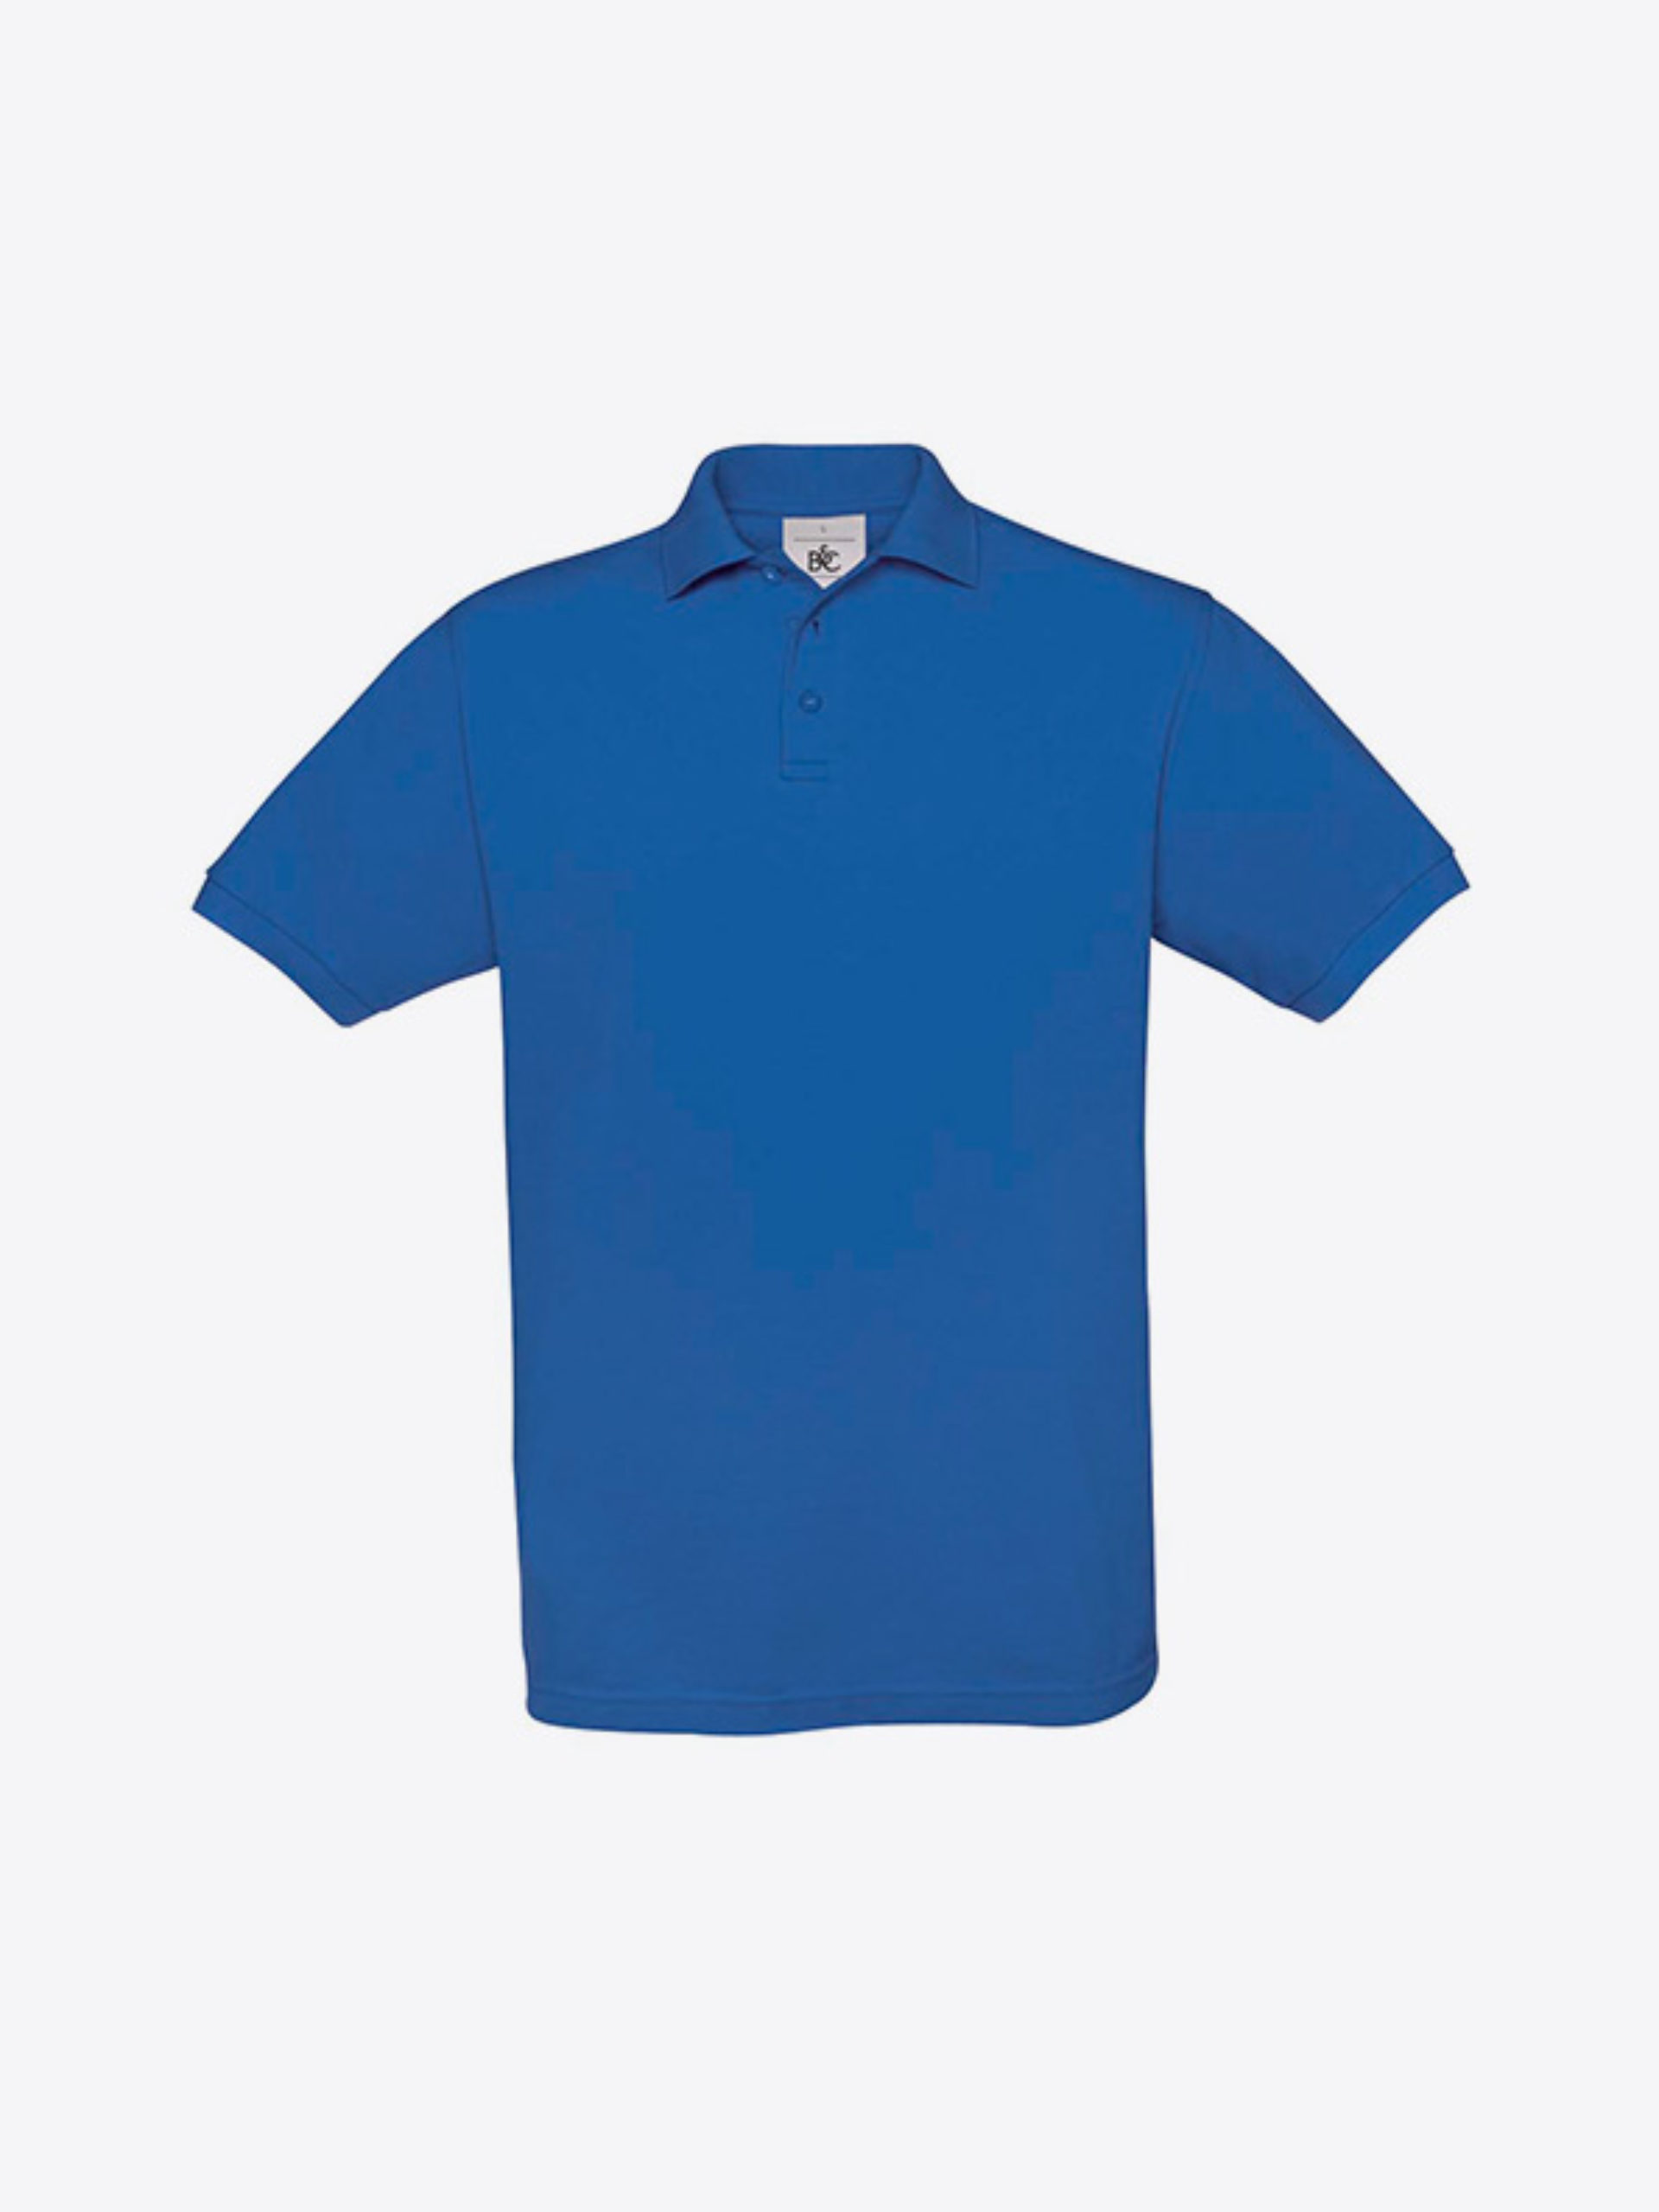 Herren Polo Shirt In Der Schweiz Besticken Lassen Bundc Safran Pu409 Royal Blue